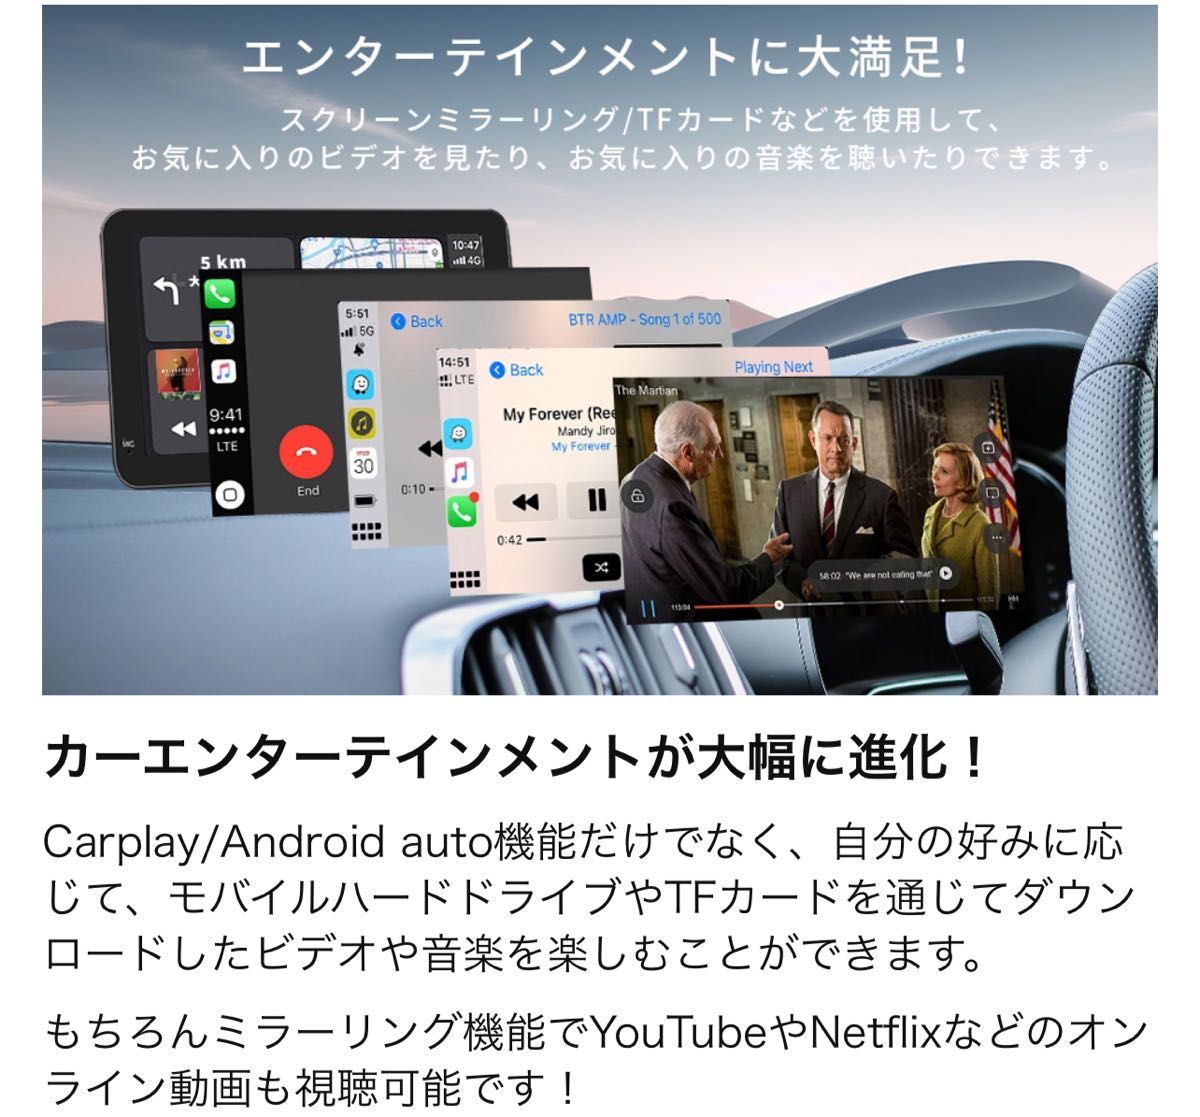 カーナビ CarPlay/Android Autoに対応 車載 7インチ オーディオ一体型ナビ ポータブル AirPlay機能付き